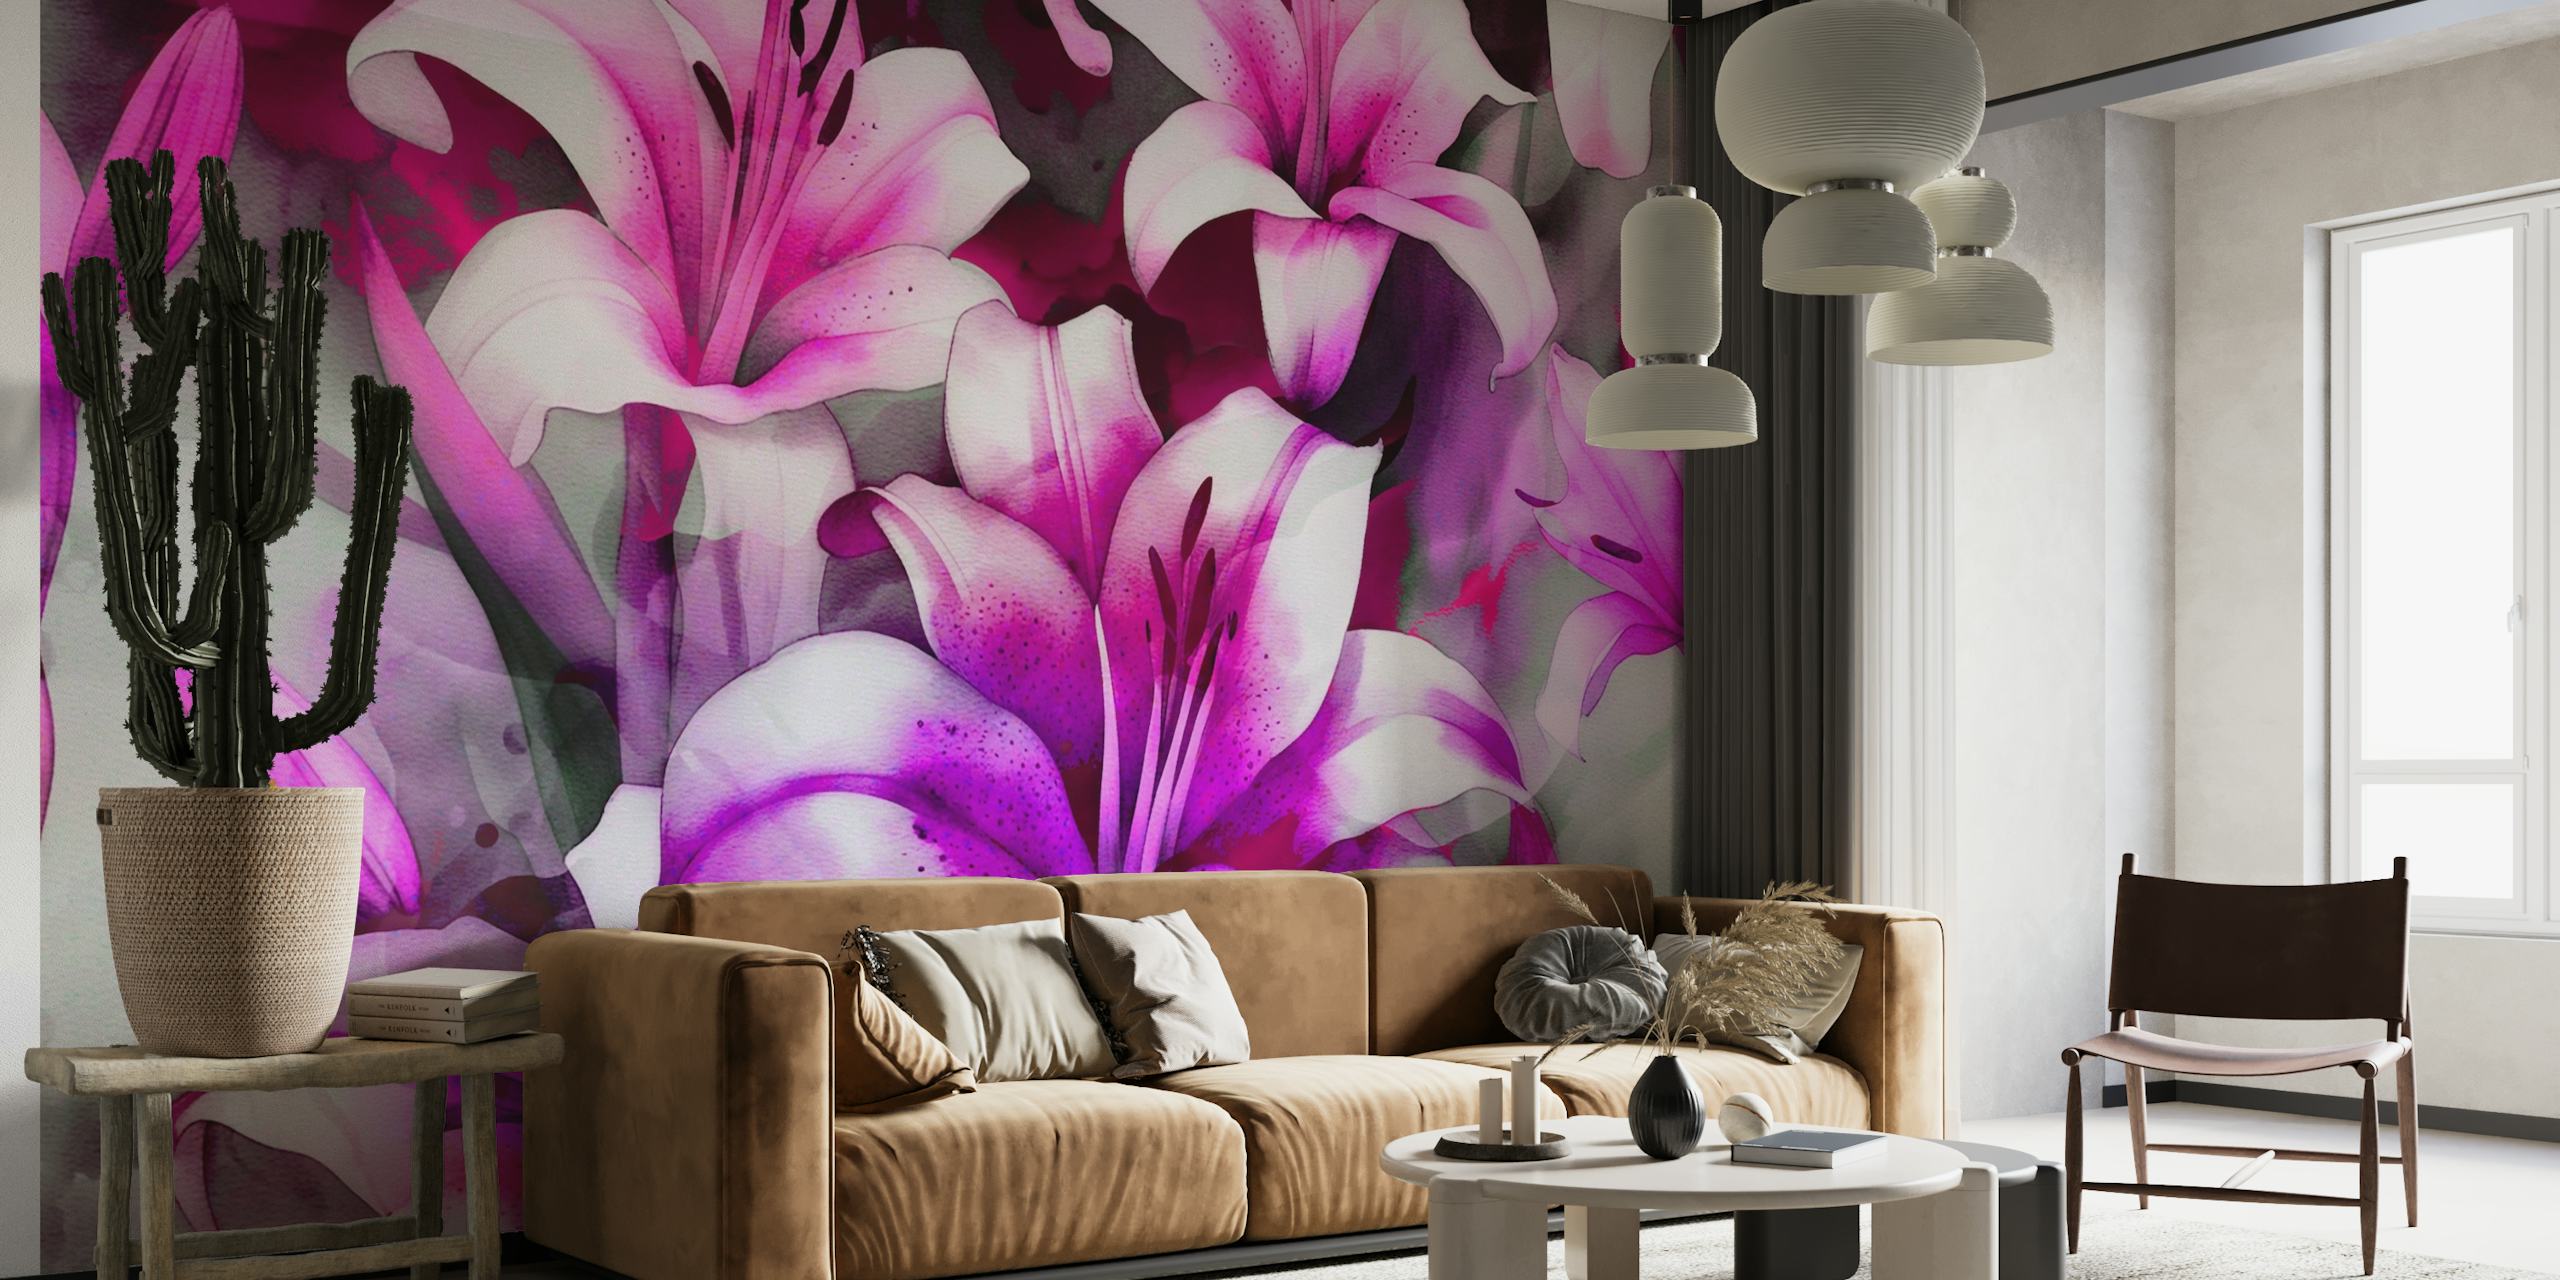 Abstrakt akvarellveggmaleri av rosa og lilla liljer med en drømmende estetikk